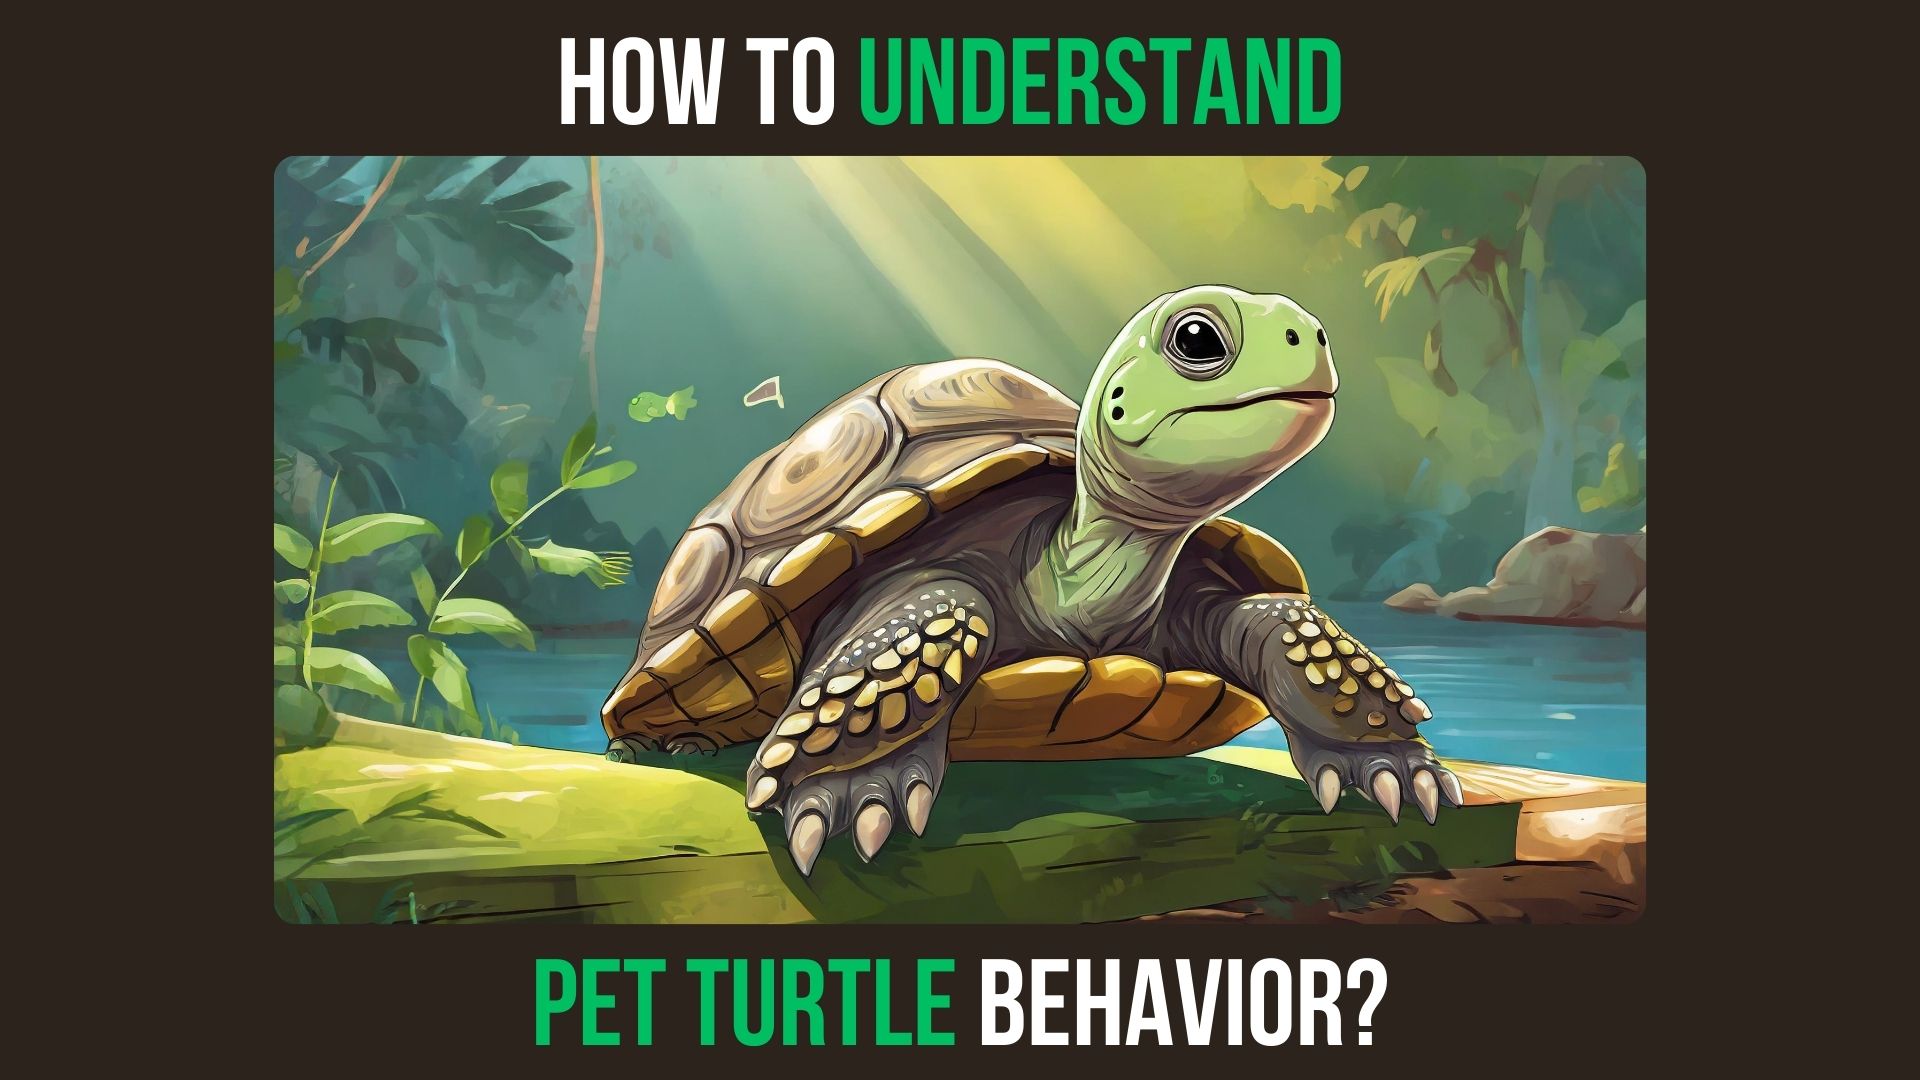 Pet Turtle Behavior